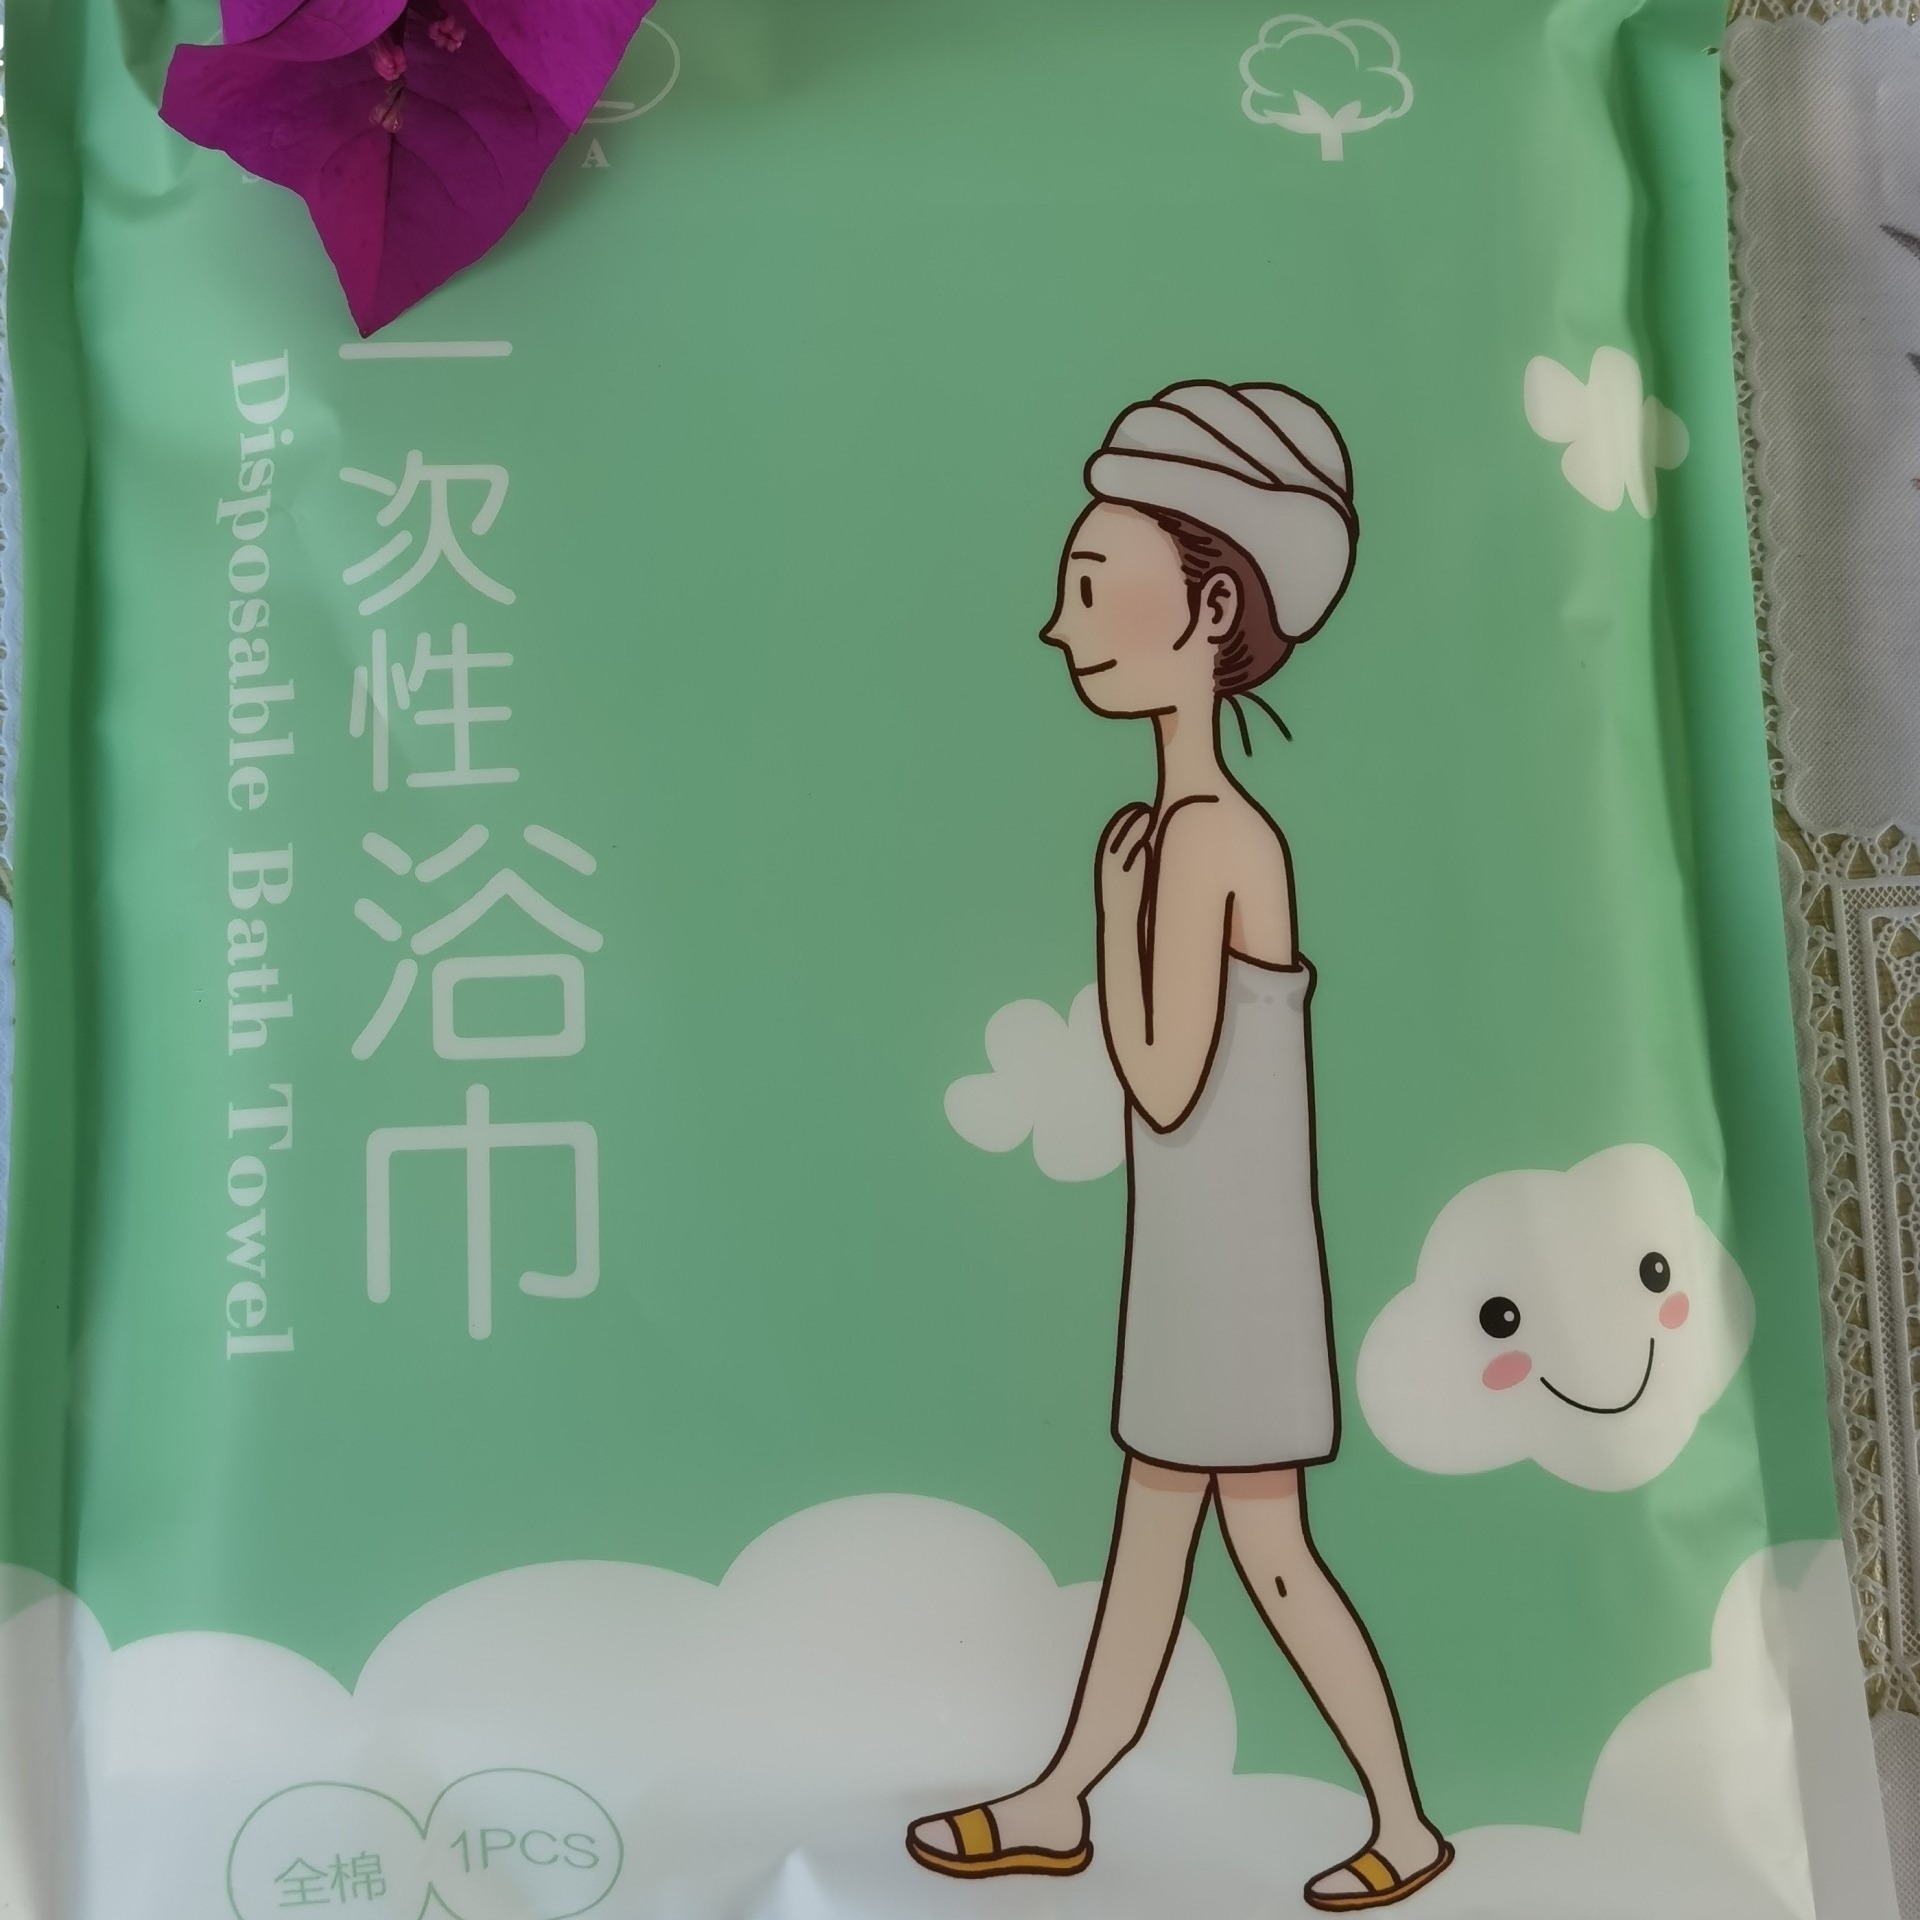 一次性浴巾  朗生浴巾  旅行浴巾 便携式浴巾LSM017  生产厂家